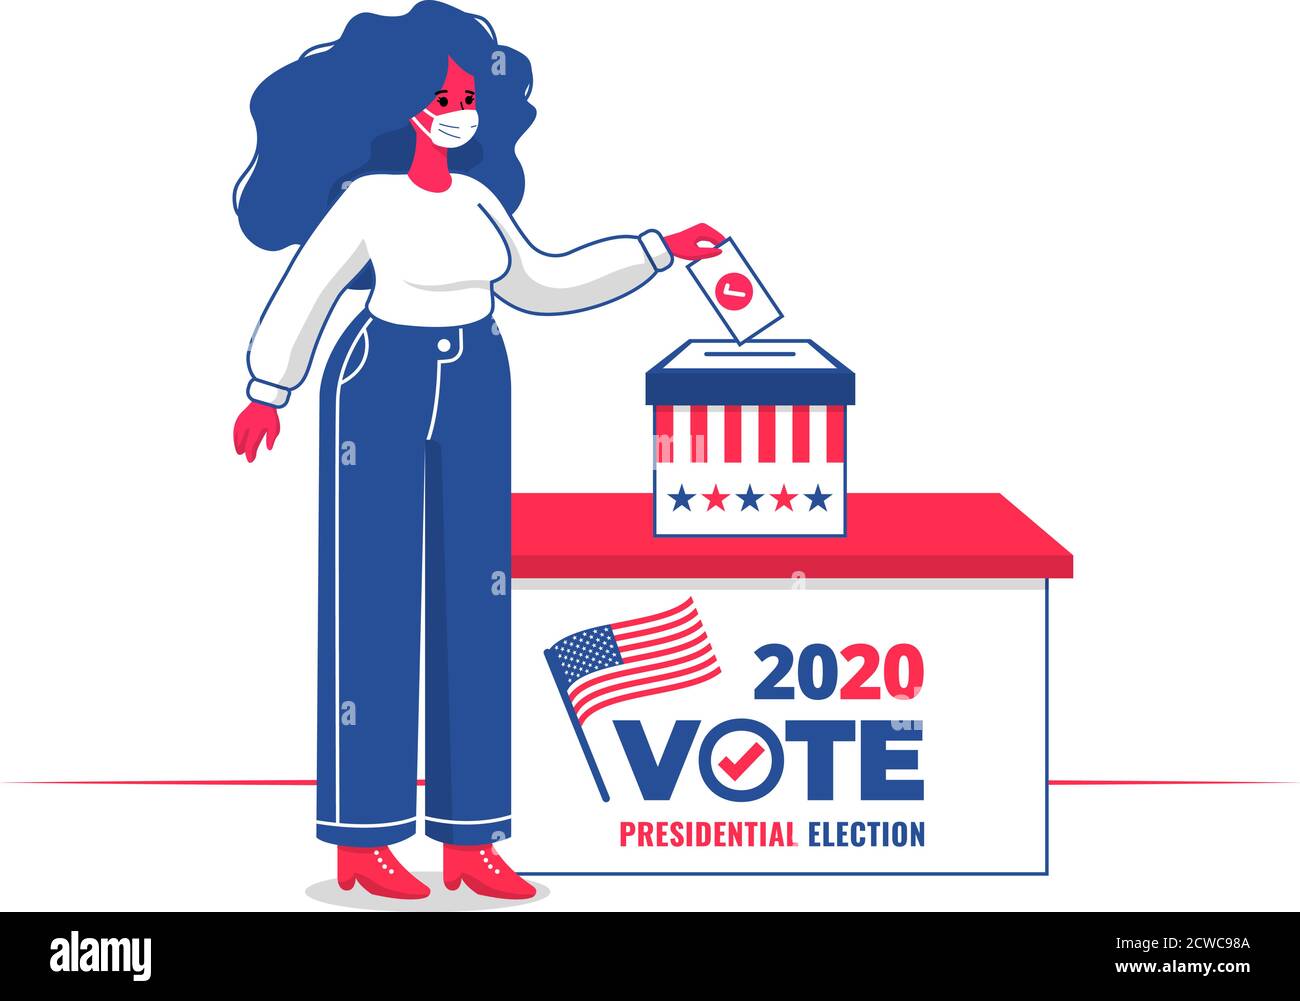 Femme avec masque de visage votant dans une boîte de vote pour Élection présidentielle américaine 2020 avec design plat Illustration de Vecteur